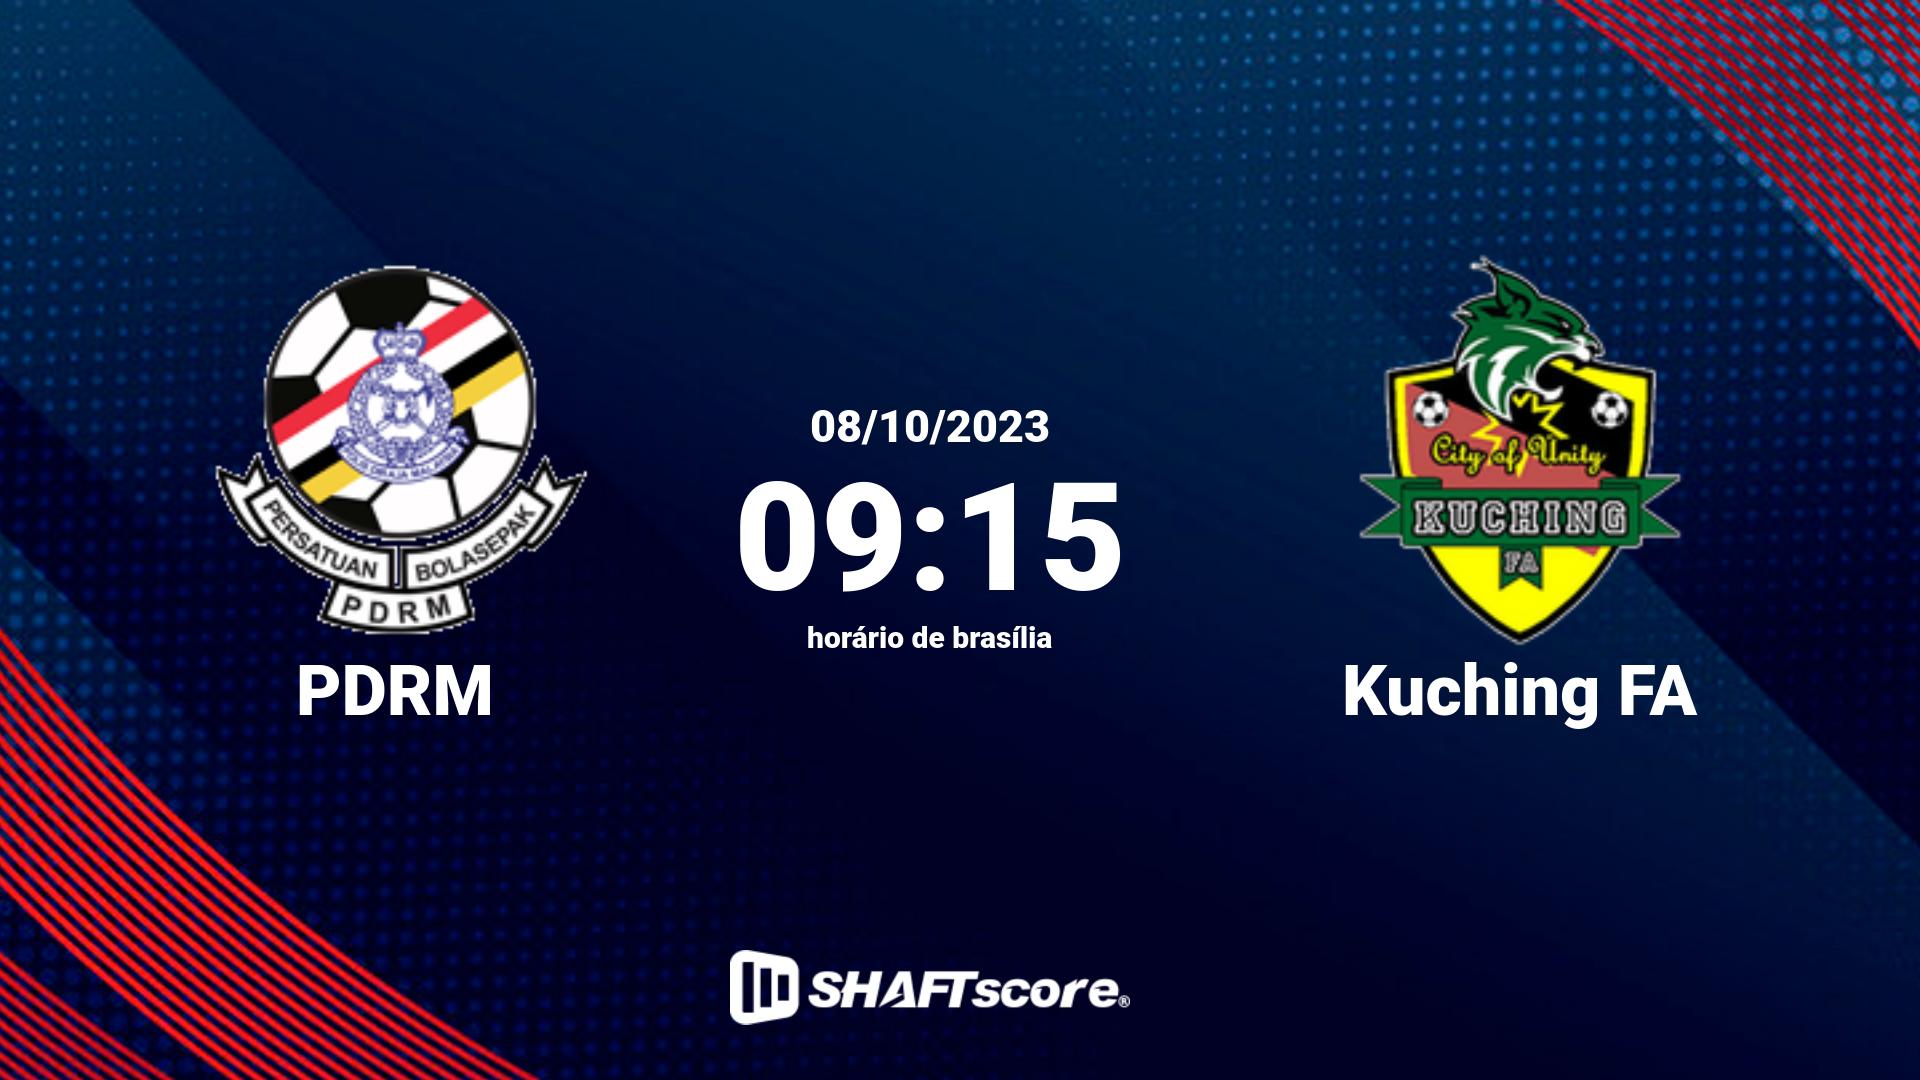 Estatísticas do jogo PDRM vs Kuching FA 08.10 09:15